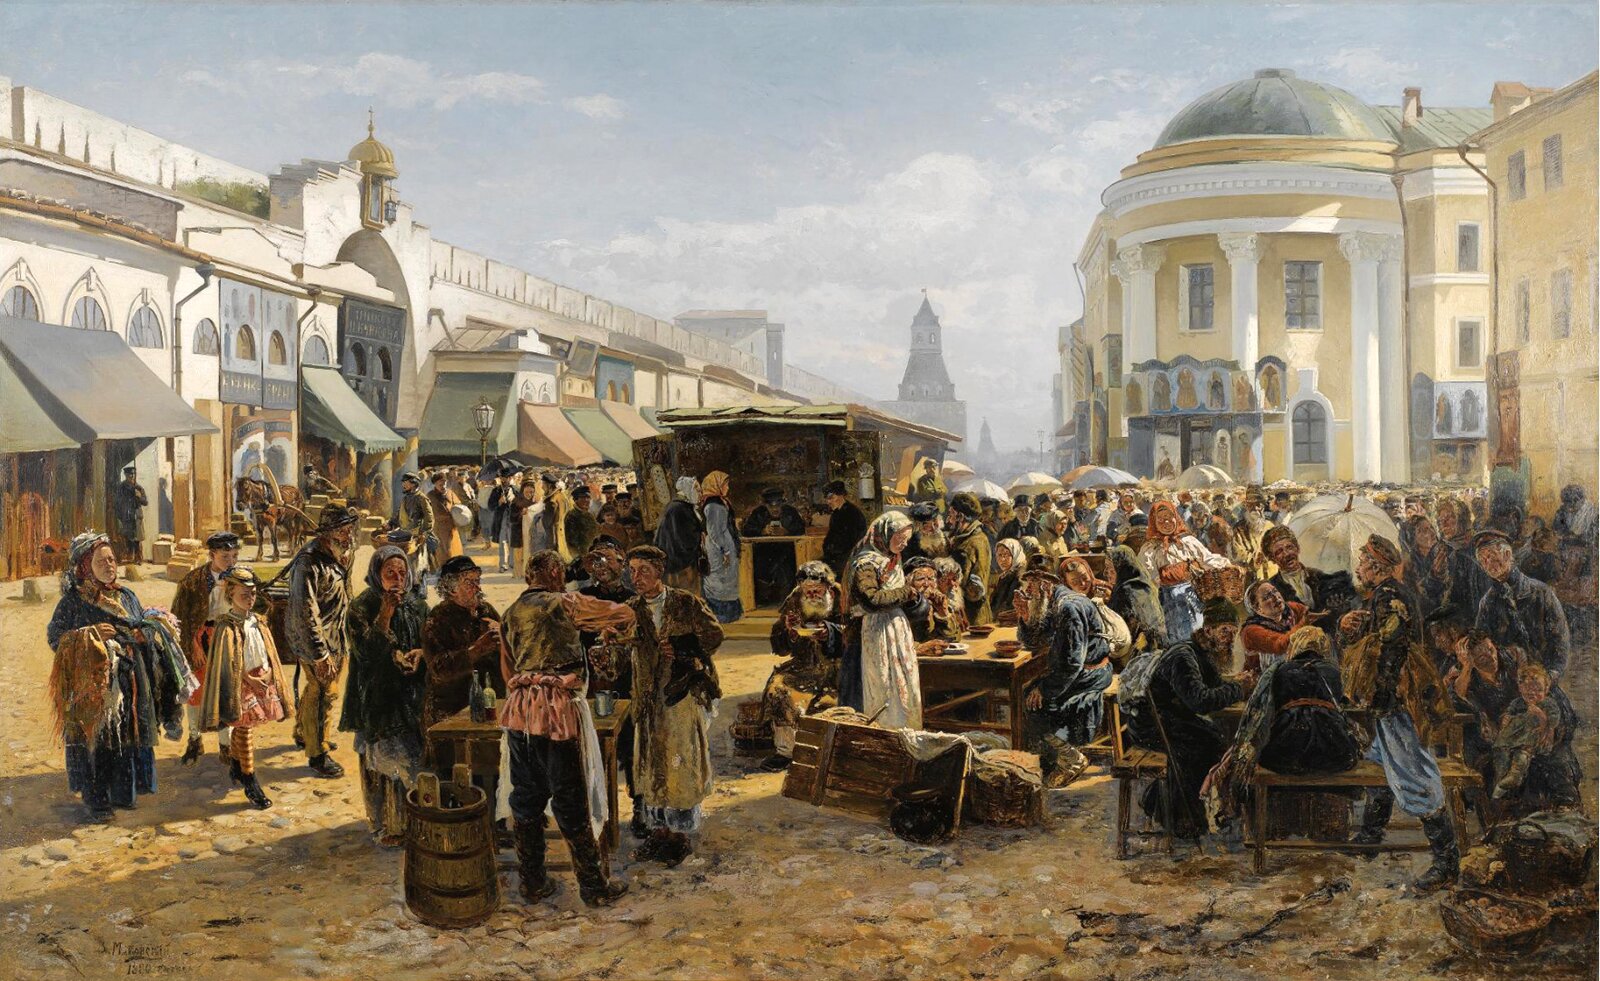 В. Маковский. Толкучий рынок в Москве. 1879–1880 годы